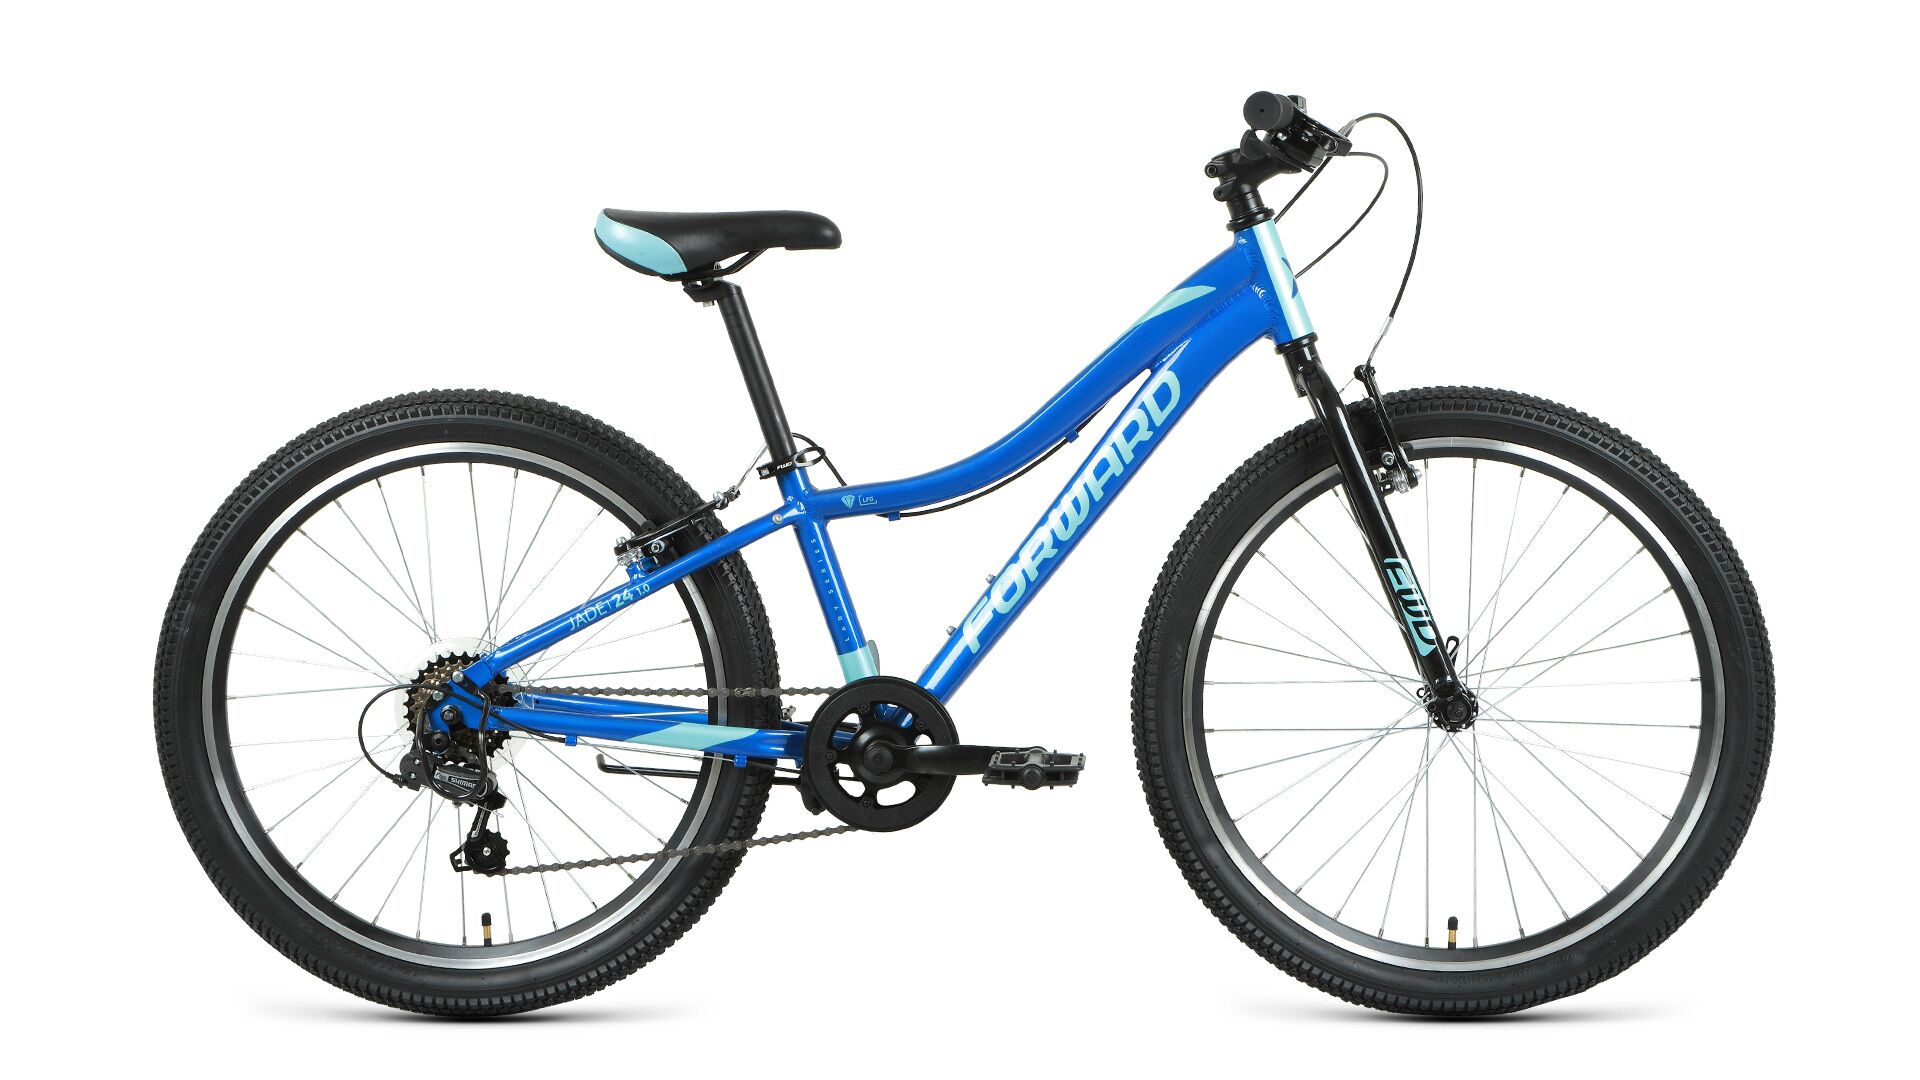 Фото выбрать и купить велосипед forward jade 24 1.0 (2021) синий / бирюзовый велосипеды с доставкой, в магазине или со склада в СПб - большой выбор для подростка, велосипед forward jade 24 1.0 (2021) синий / бирюзовый велосипеды в наличии - интернет-магазин Мастерская Тимура